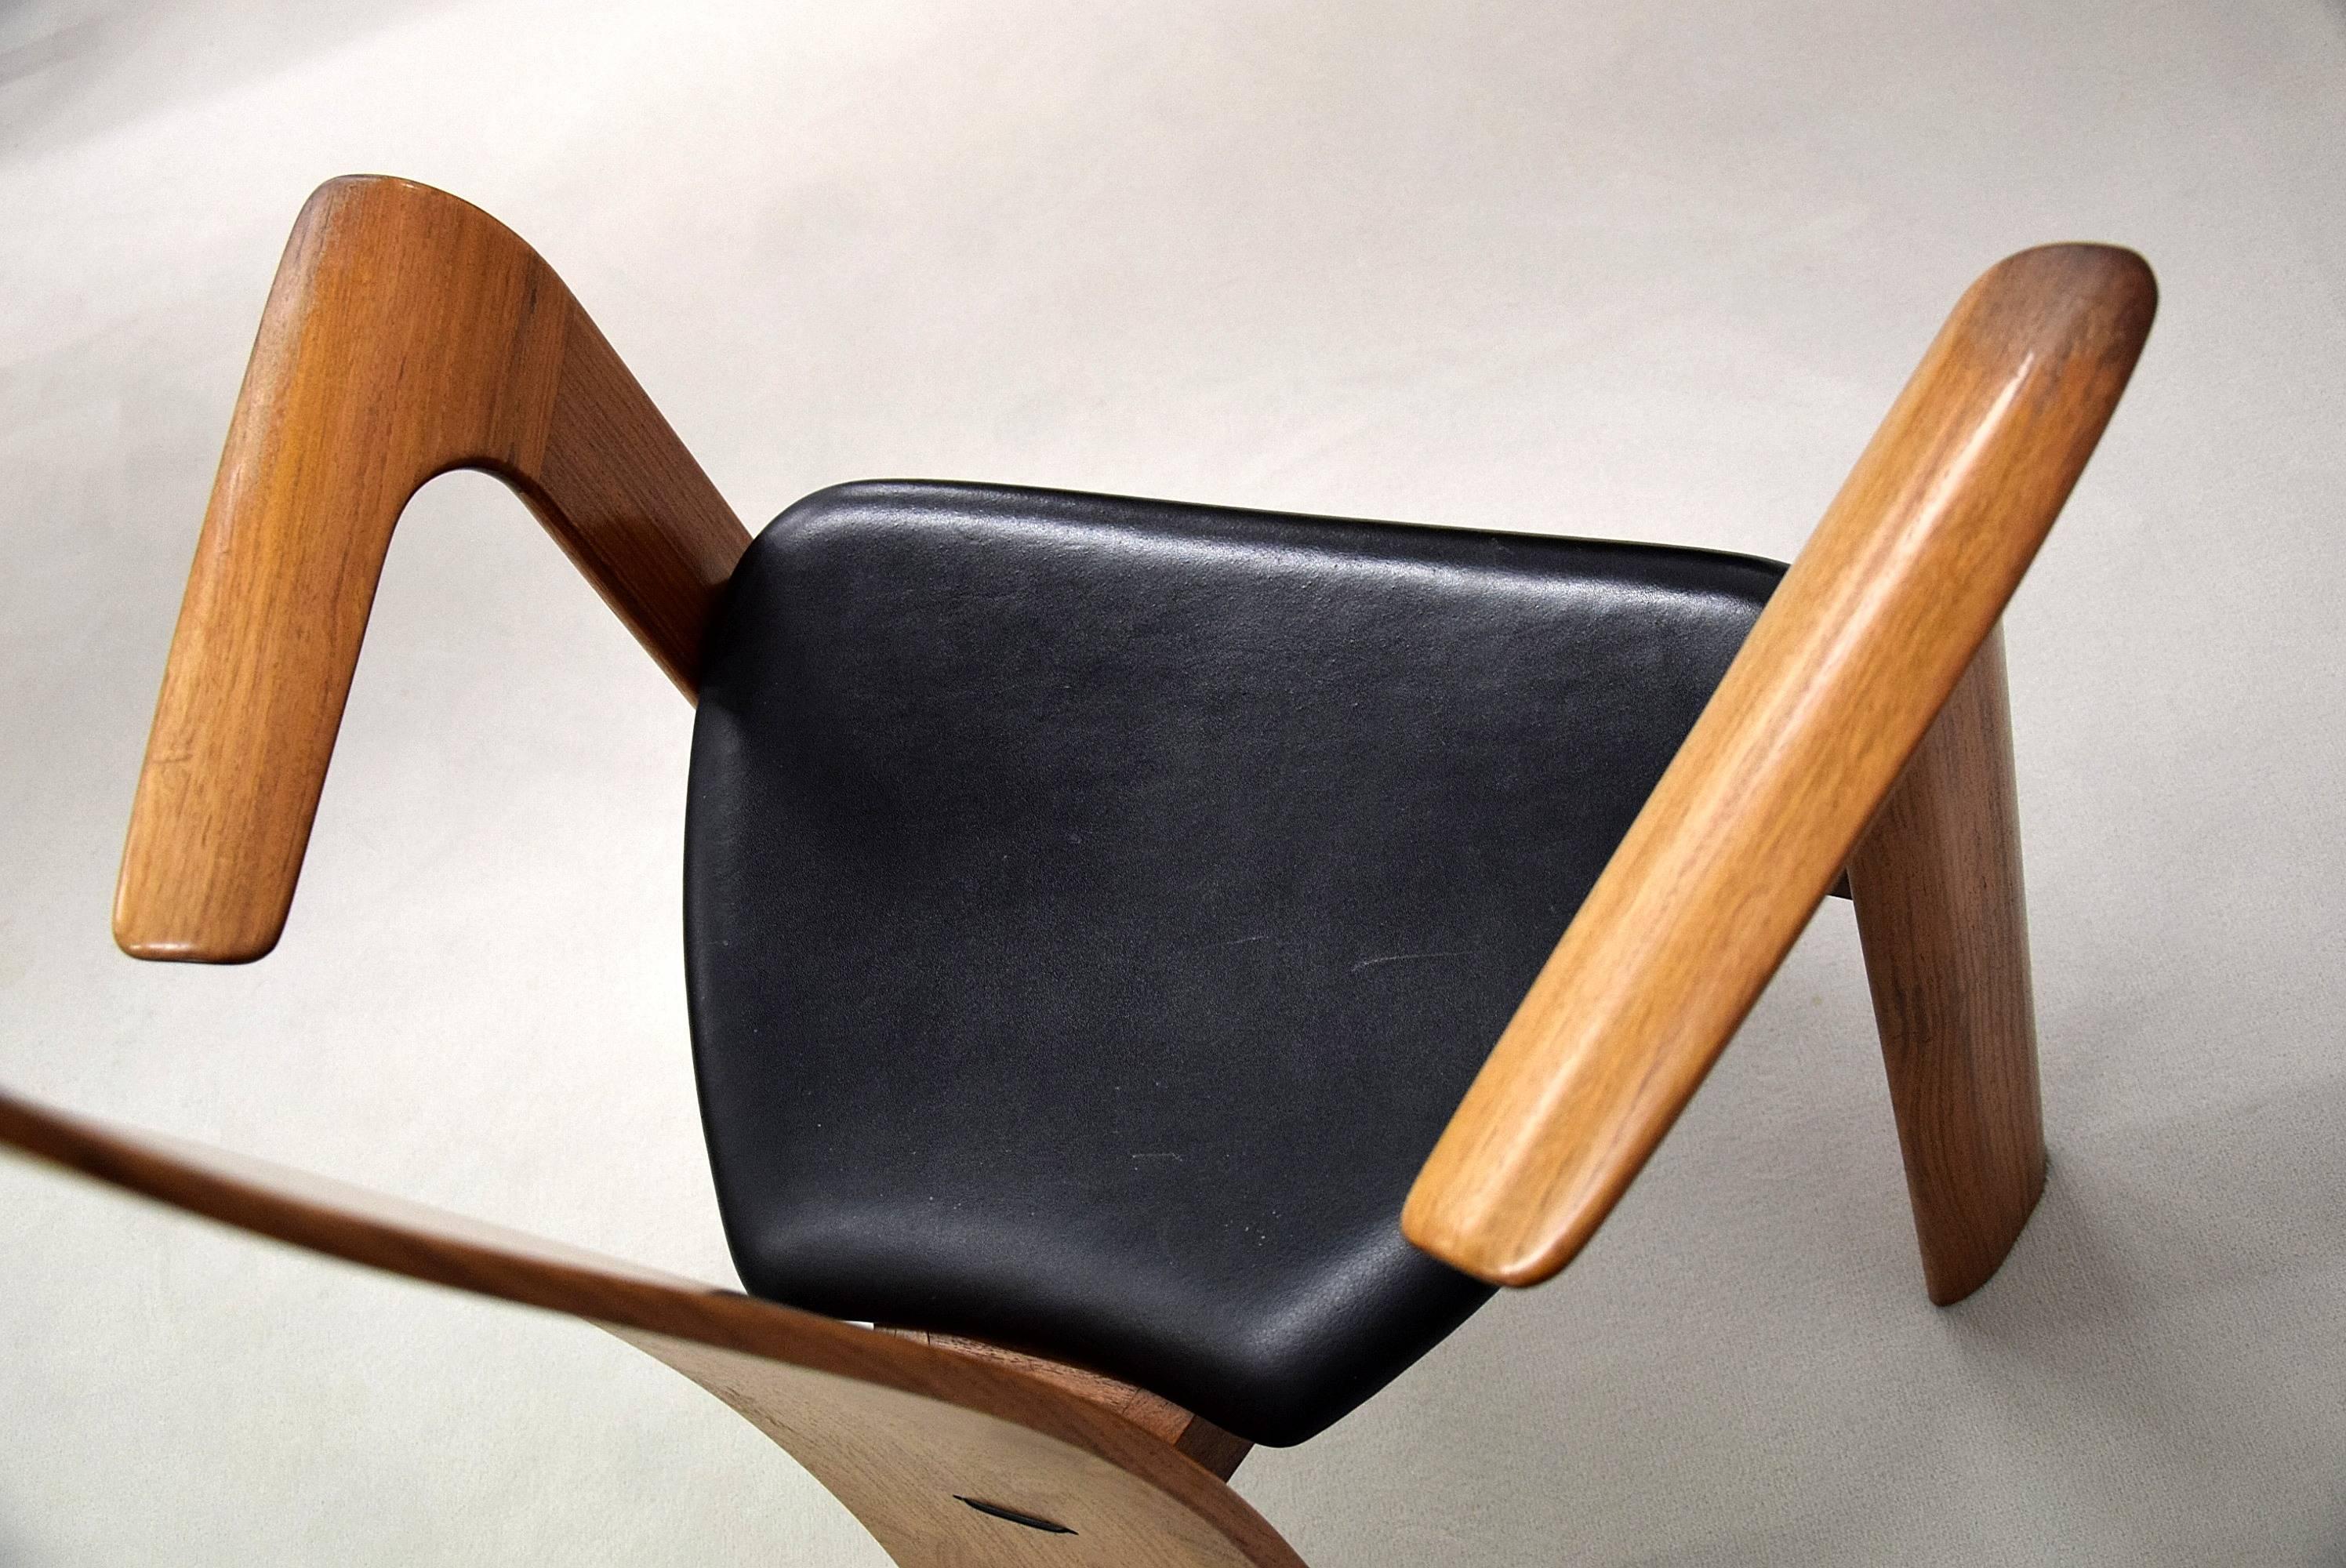 Chaise élégante et stylée du milieu du siècle en afromosia (teck africain) et cuir, conçue par Bob og Dries van den Bergh pour Tranekær Mobler, Danemark.

Ce design spectaculaire est un bijou dans n'importe quel environnement. La chaise est en